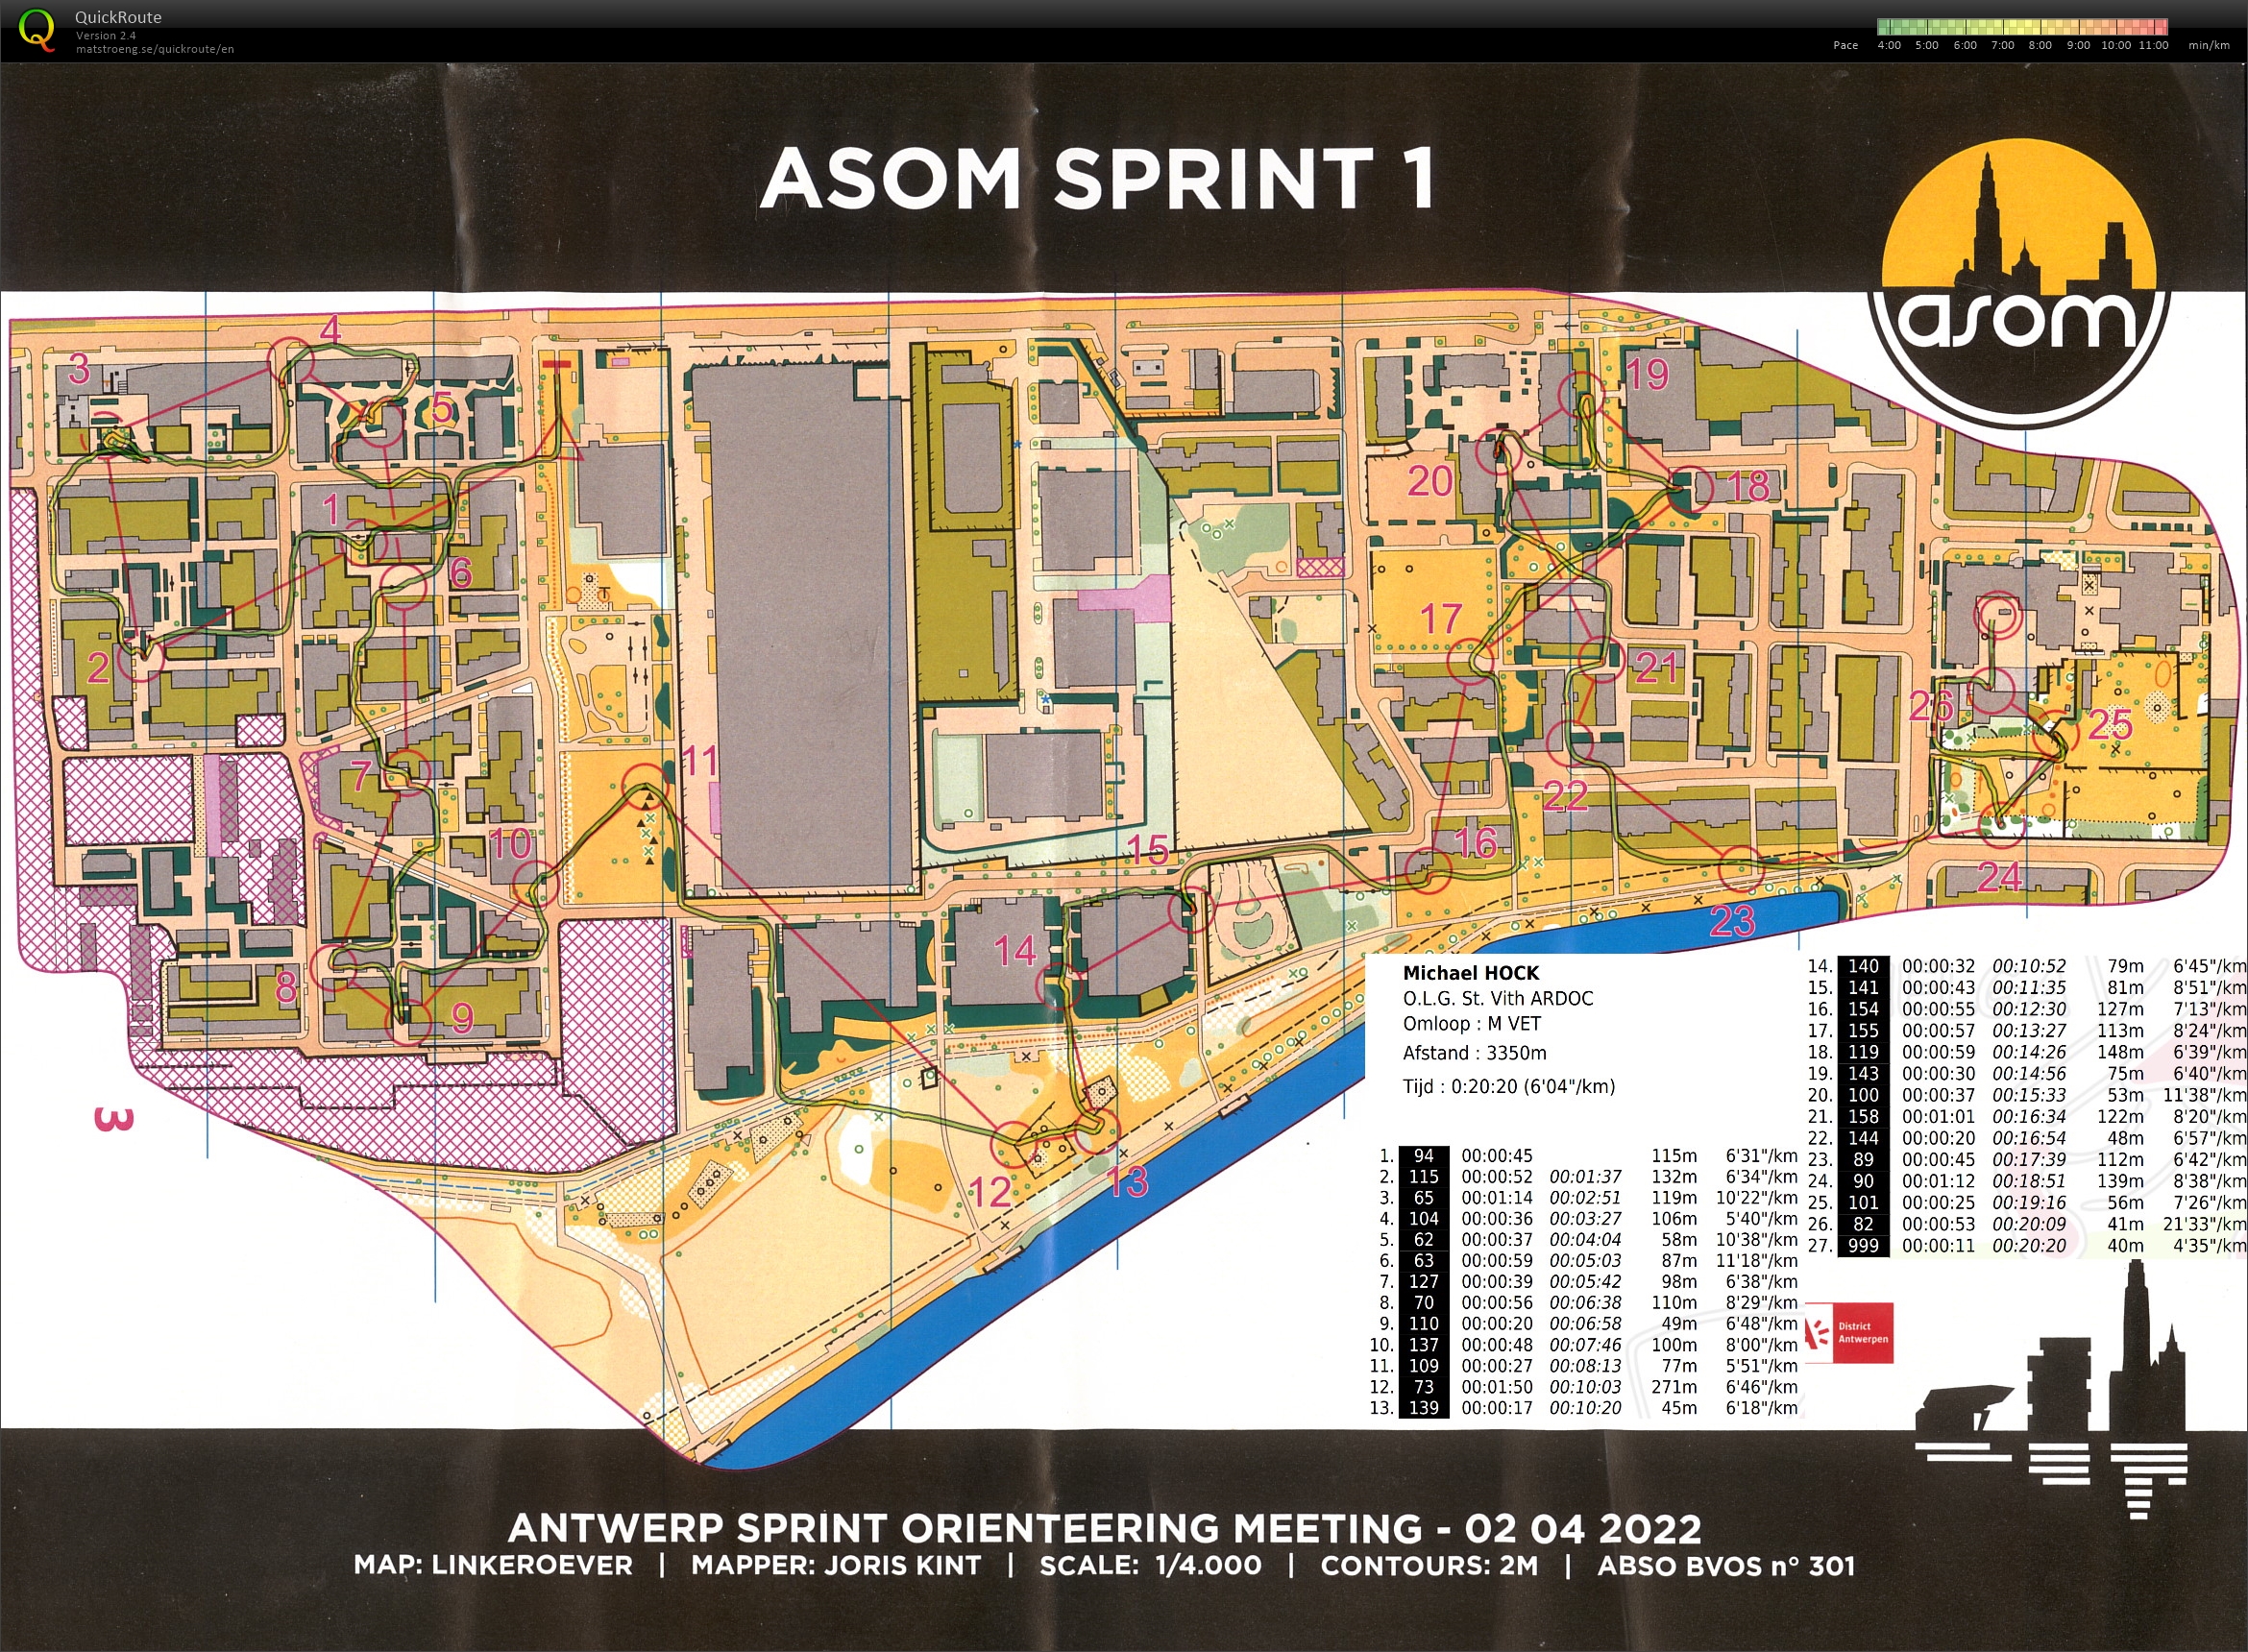 ASOM Sprint 1 (02.04.2022)